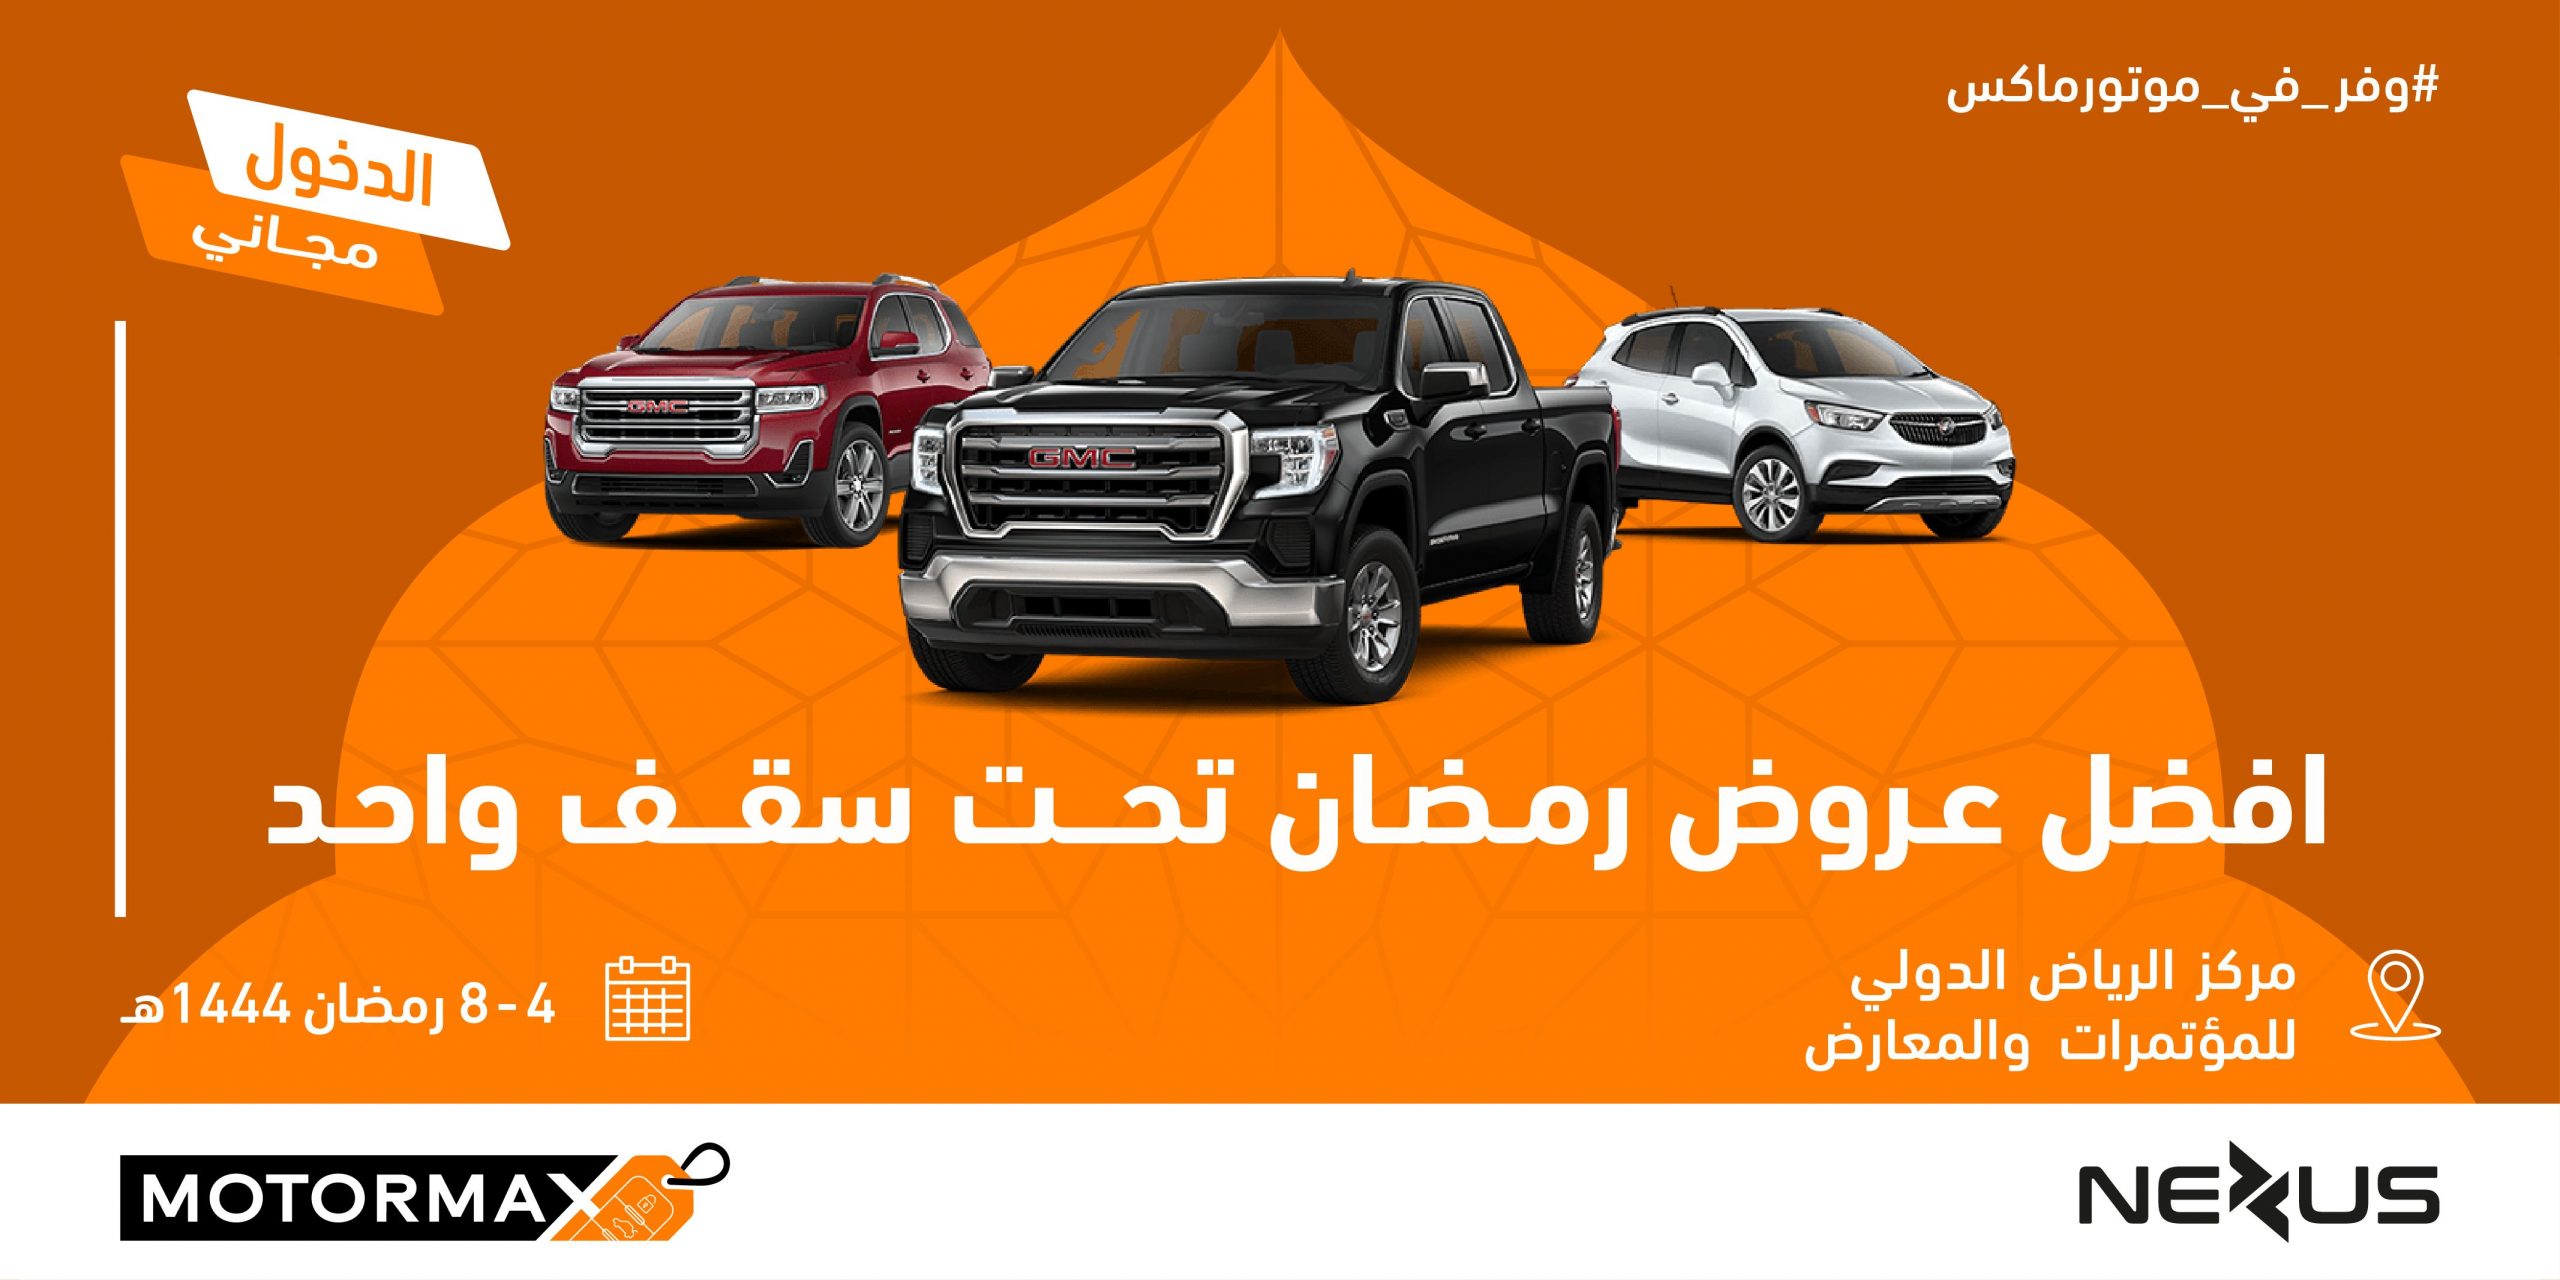 معرض رمضان الاستهلاكي للسيارات "موتورماكس" يستقبل زواره خلال شهر رمضان المبارك في مركز الرياض الدولي للمؤتمرات والمعارض 19